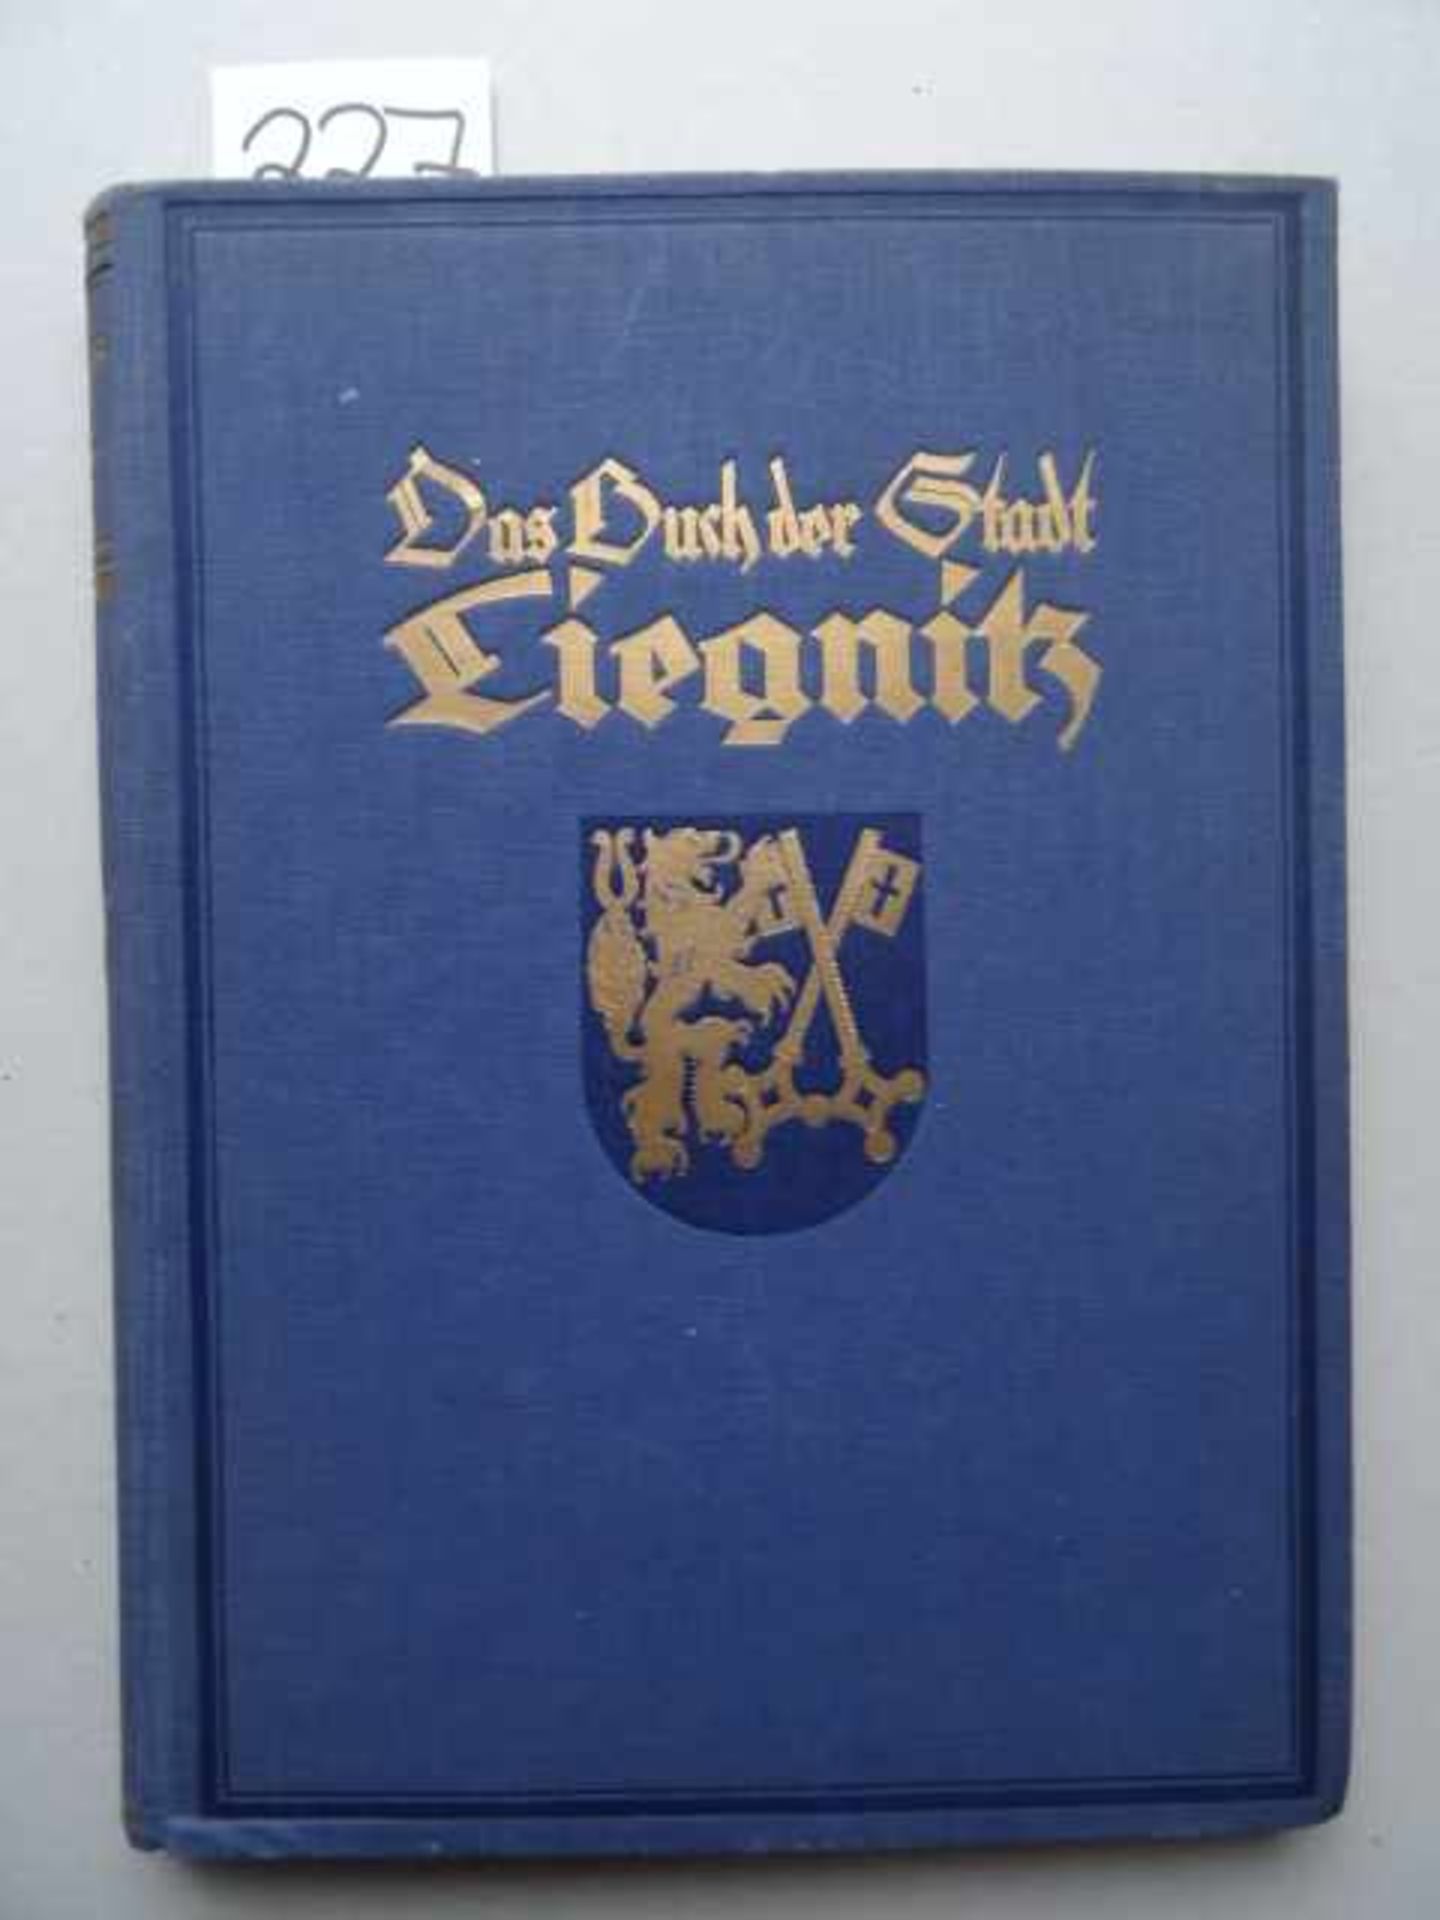 Polen.- Die Stadt Liegnitz. Hrsg. v. E. Stein. Berlin, Deutscher Kommunal-Verlag, 1927. 312 S. Mit